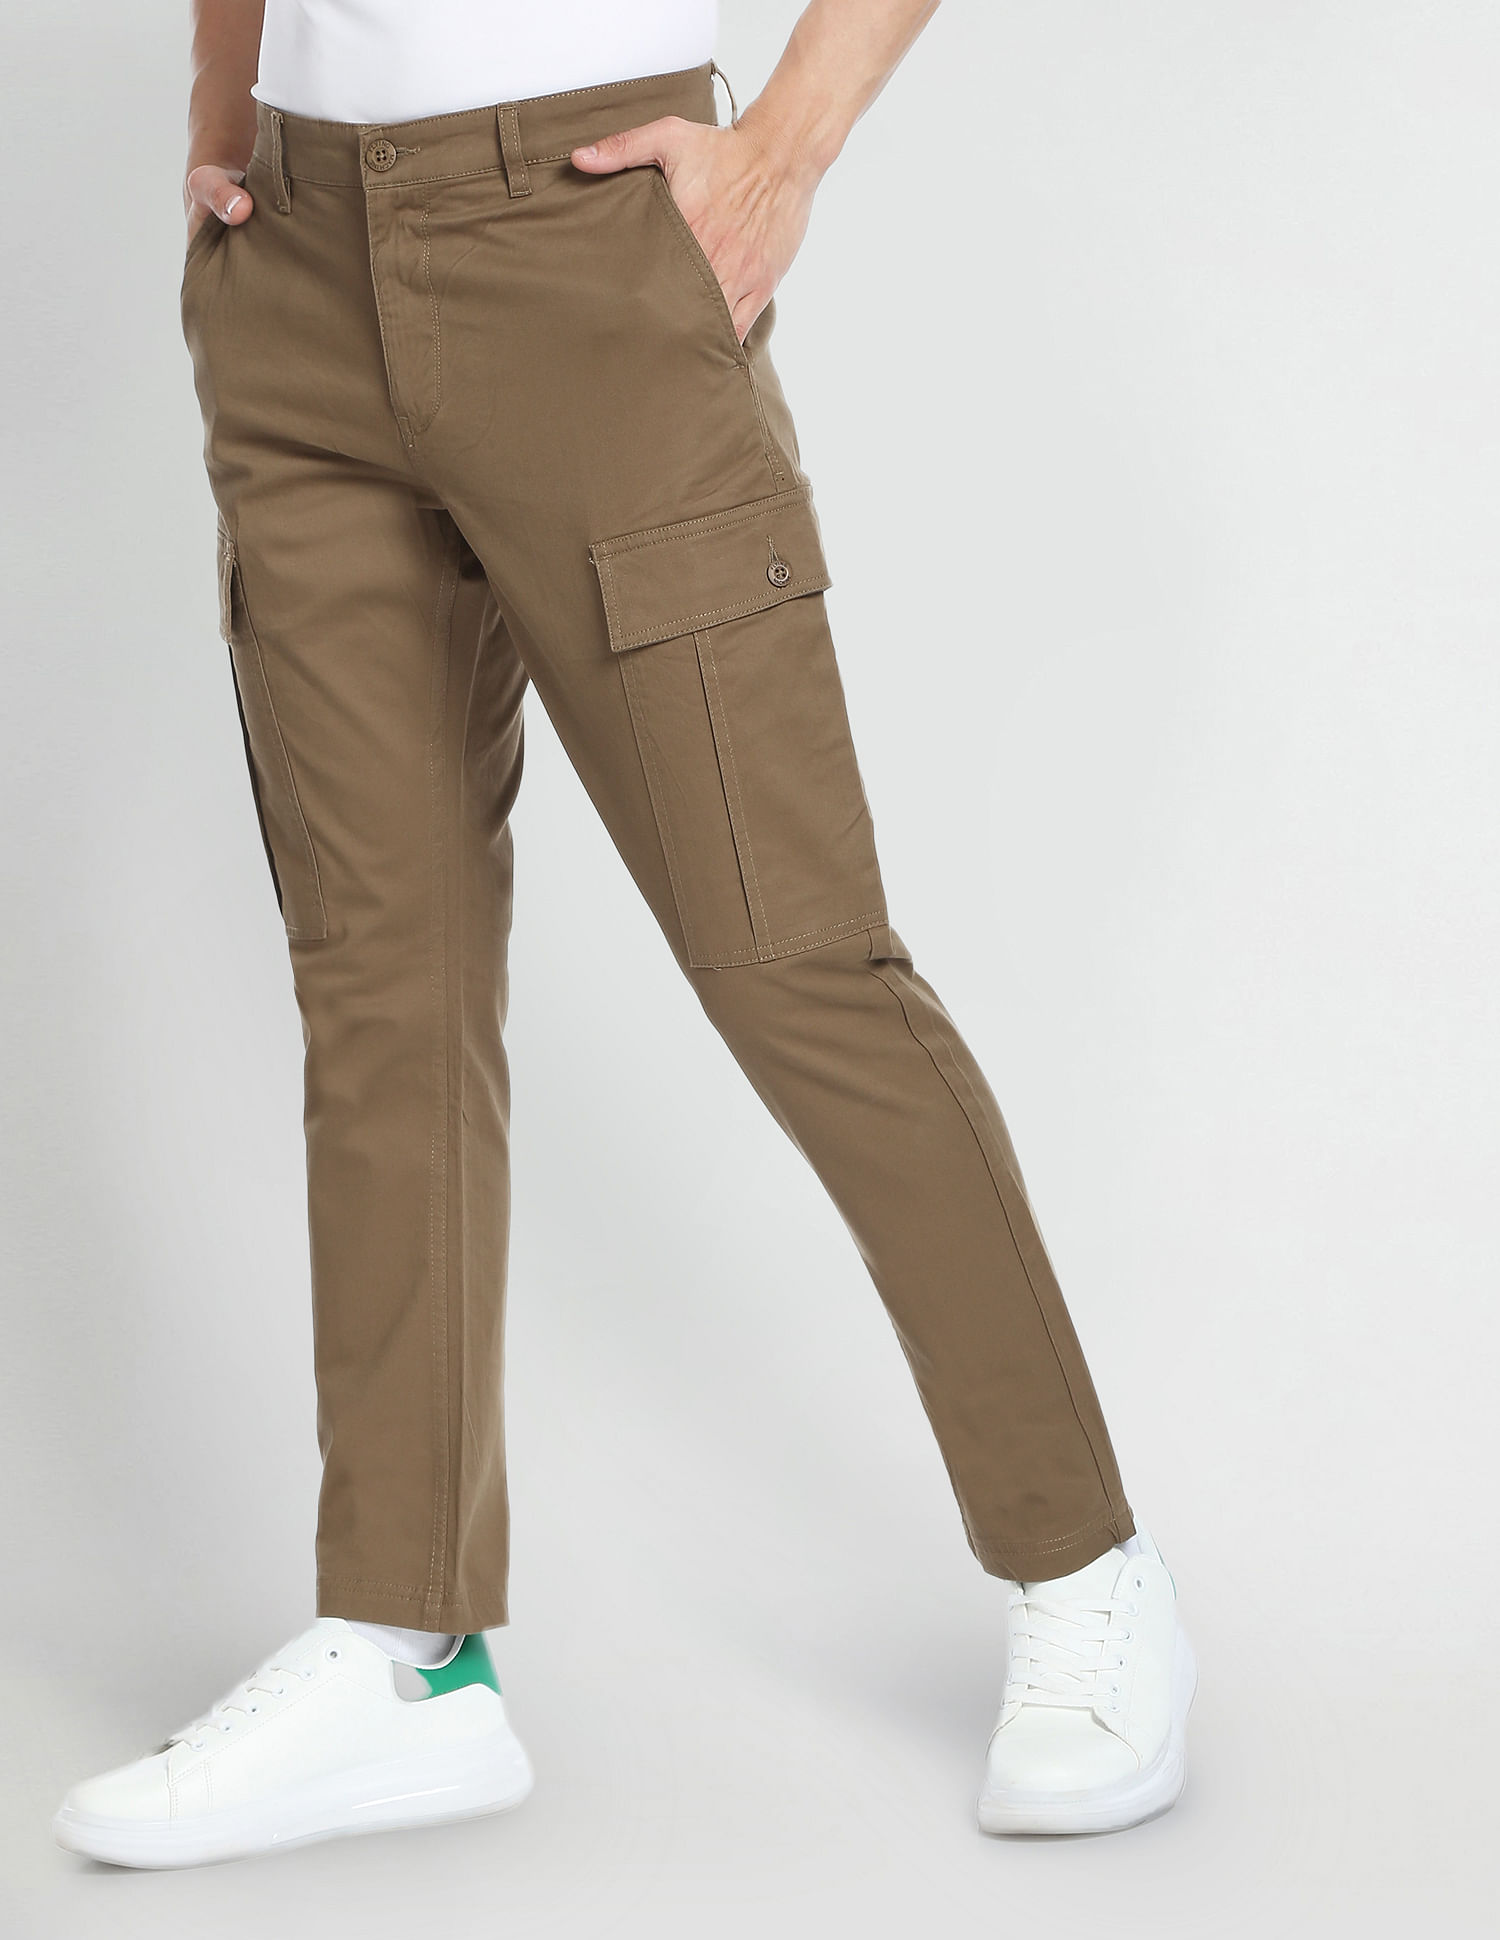 Threadbare Cargos  Buy Threadbare Men Green Cargo Trousers Online  Nykaa  Fashion